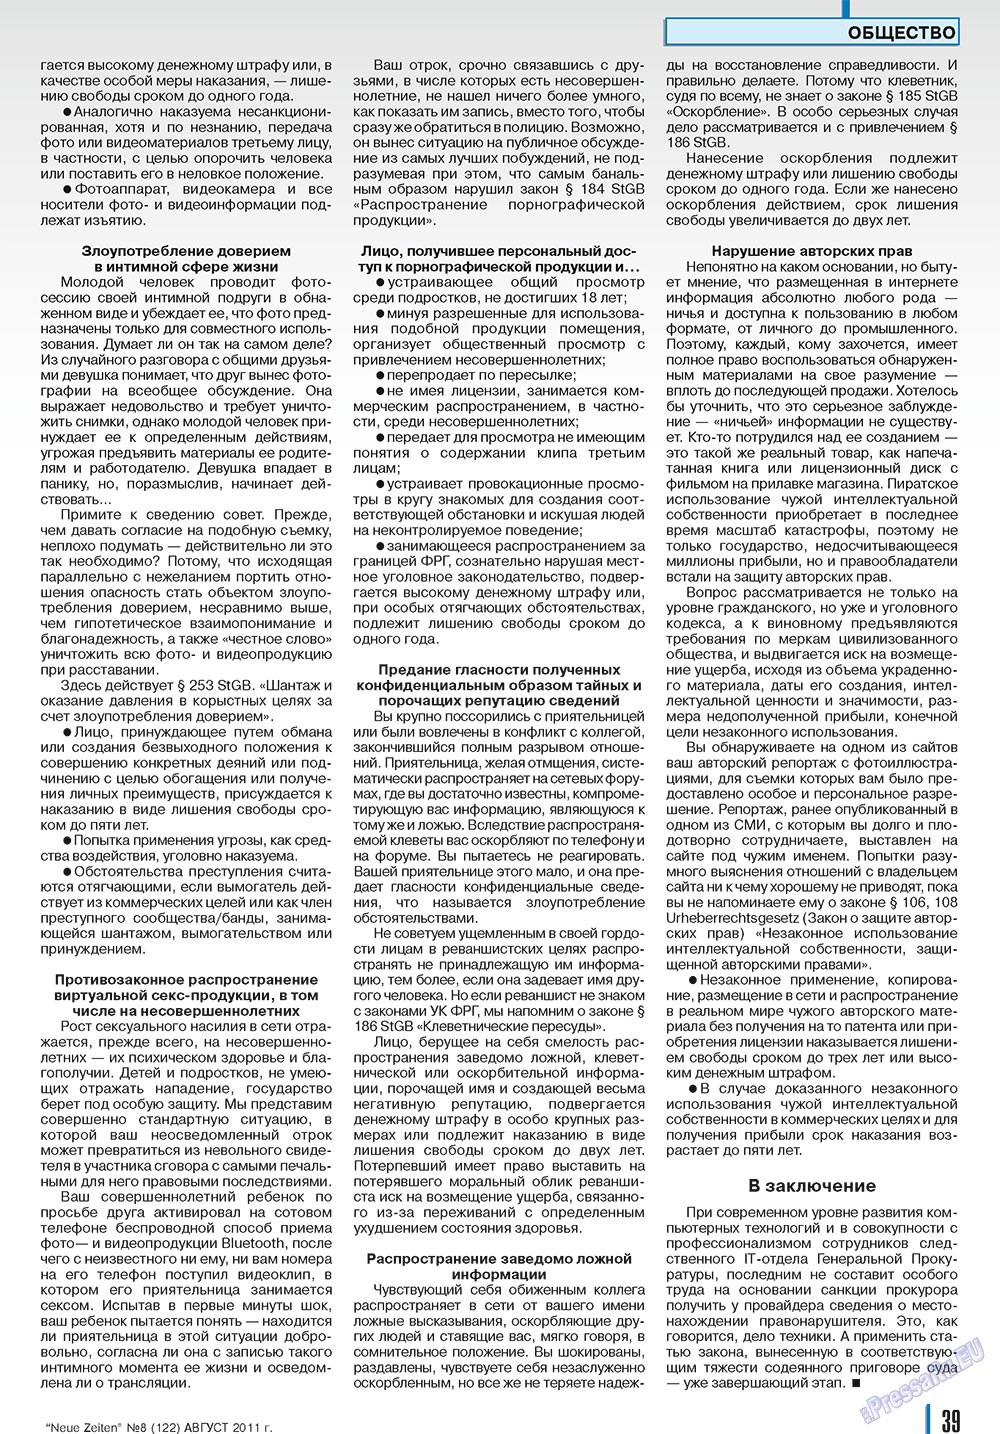 Neue Zeiten, журнал. 2011 №8 стр.39